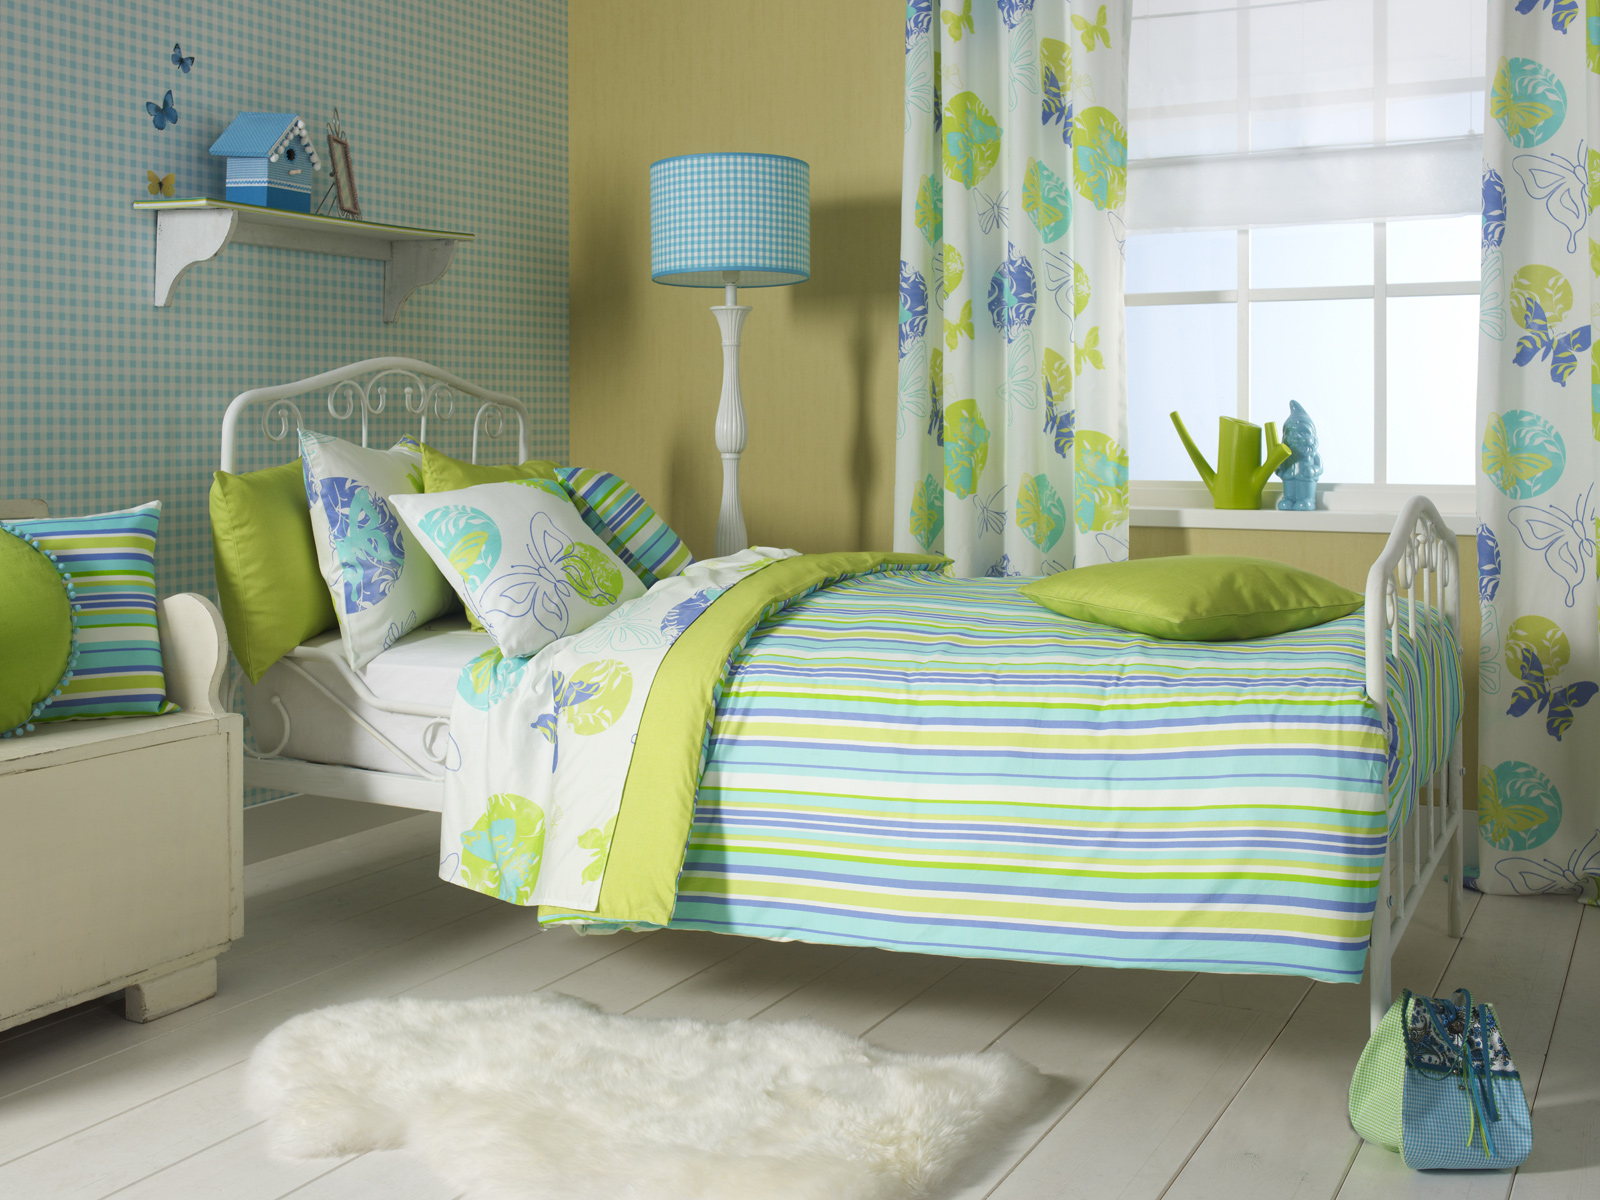 D''Decor - Blue Butterfly Garden Double Bed Sheet & Pillow Covers